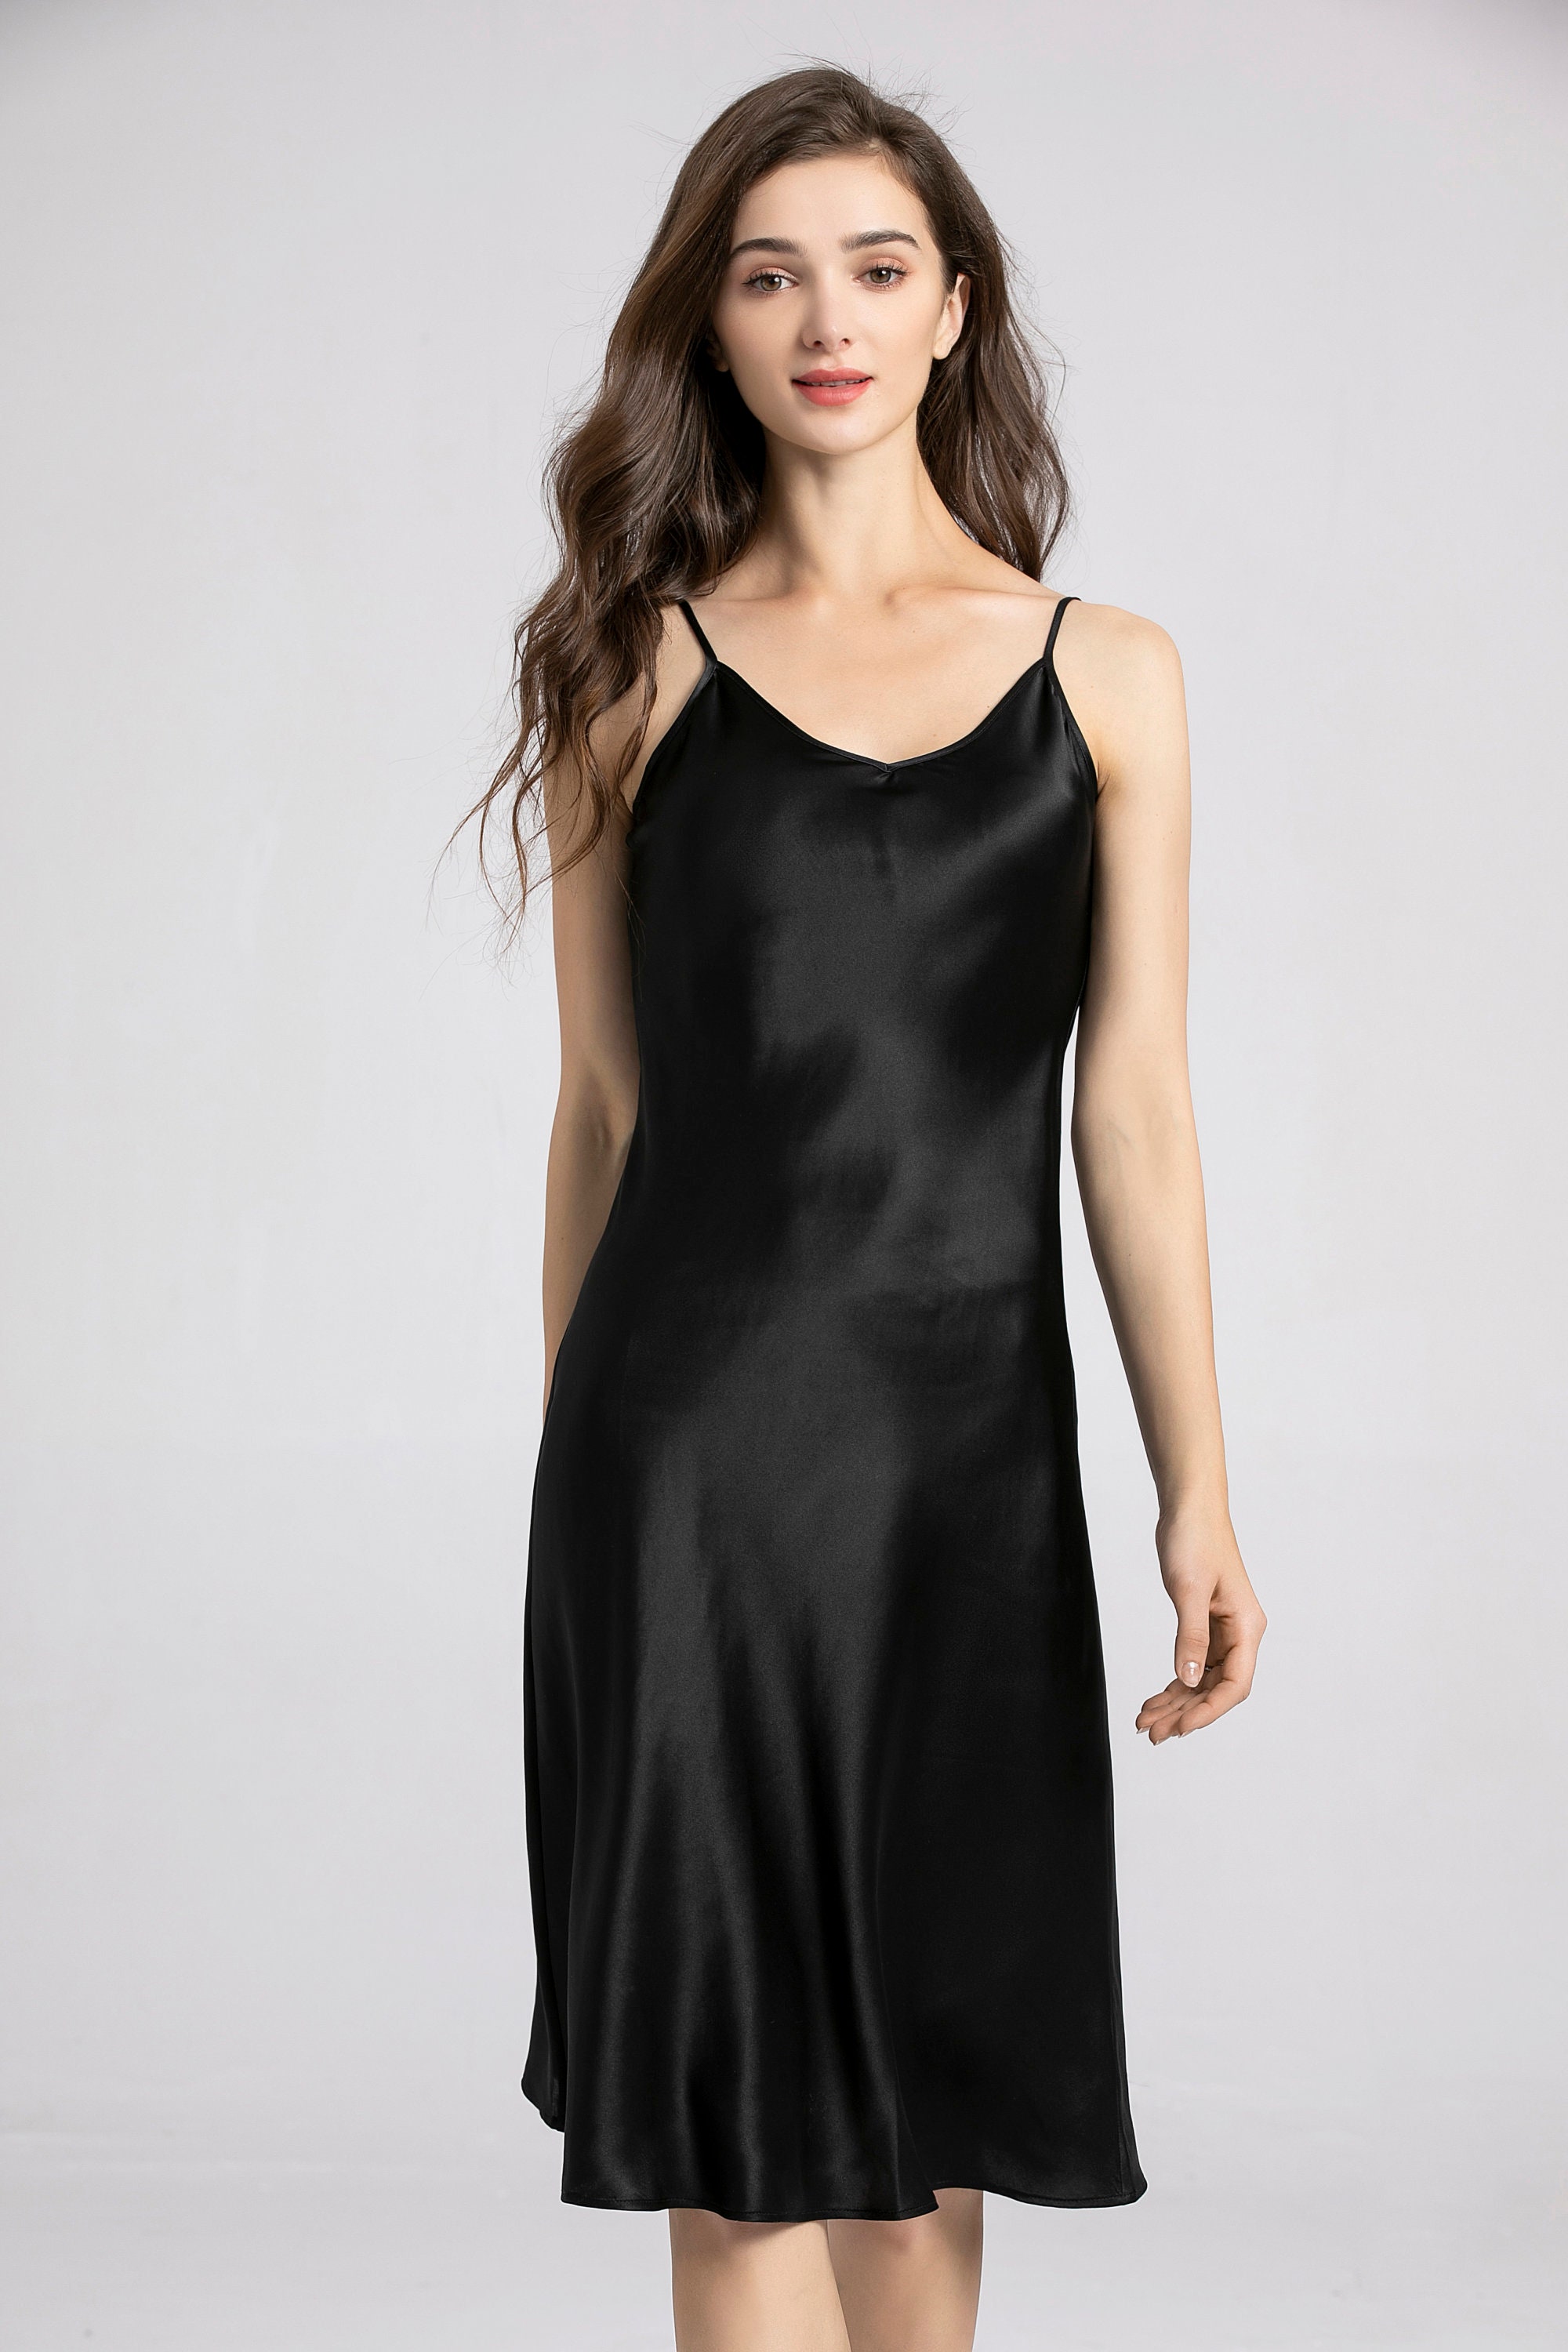 Silk Slip Dress 100% Silk Charmeuse Bias Cut Slip Midi Length | Etsy